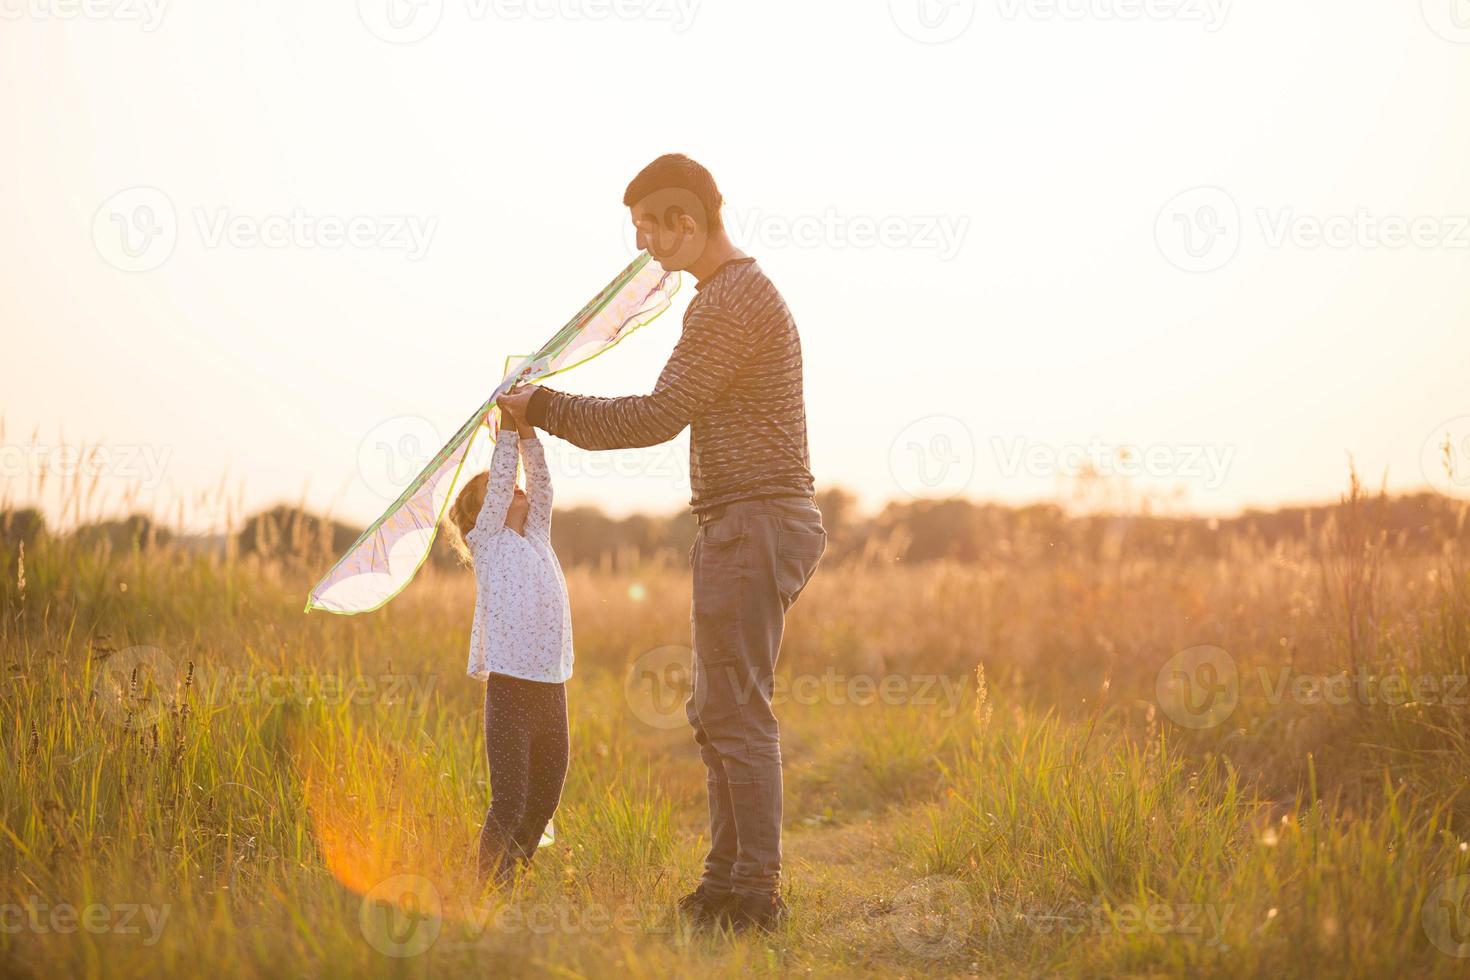 pai ajuda sua filha a empinar pipa em um campo no verão ao pôr do sol. entretenimento familiar ao ar livre, dia dos pais, dia das crianças. zonas rurais, apoio, assistência mútua. luz laranja do sol foto